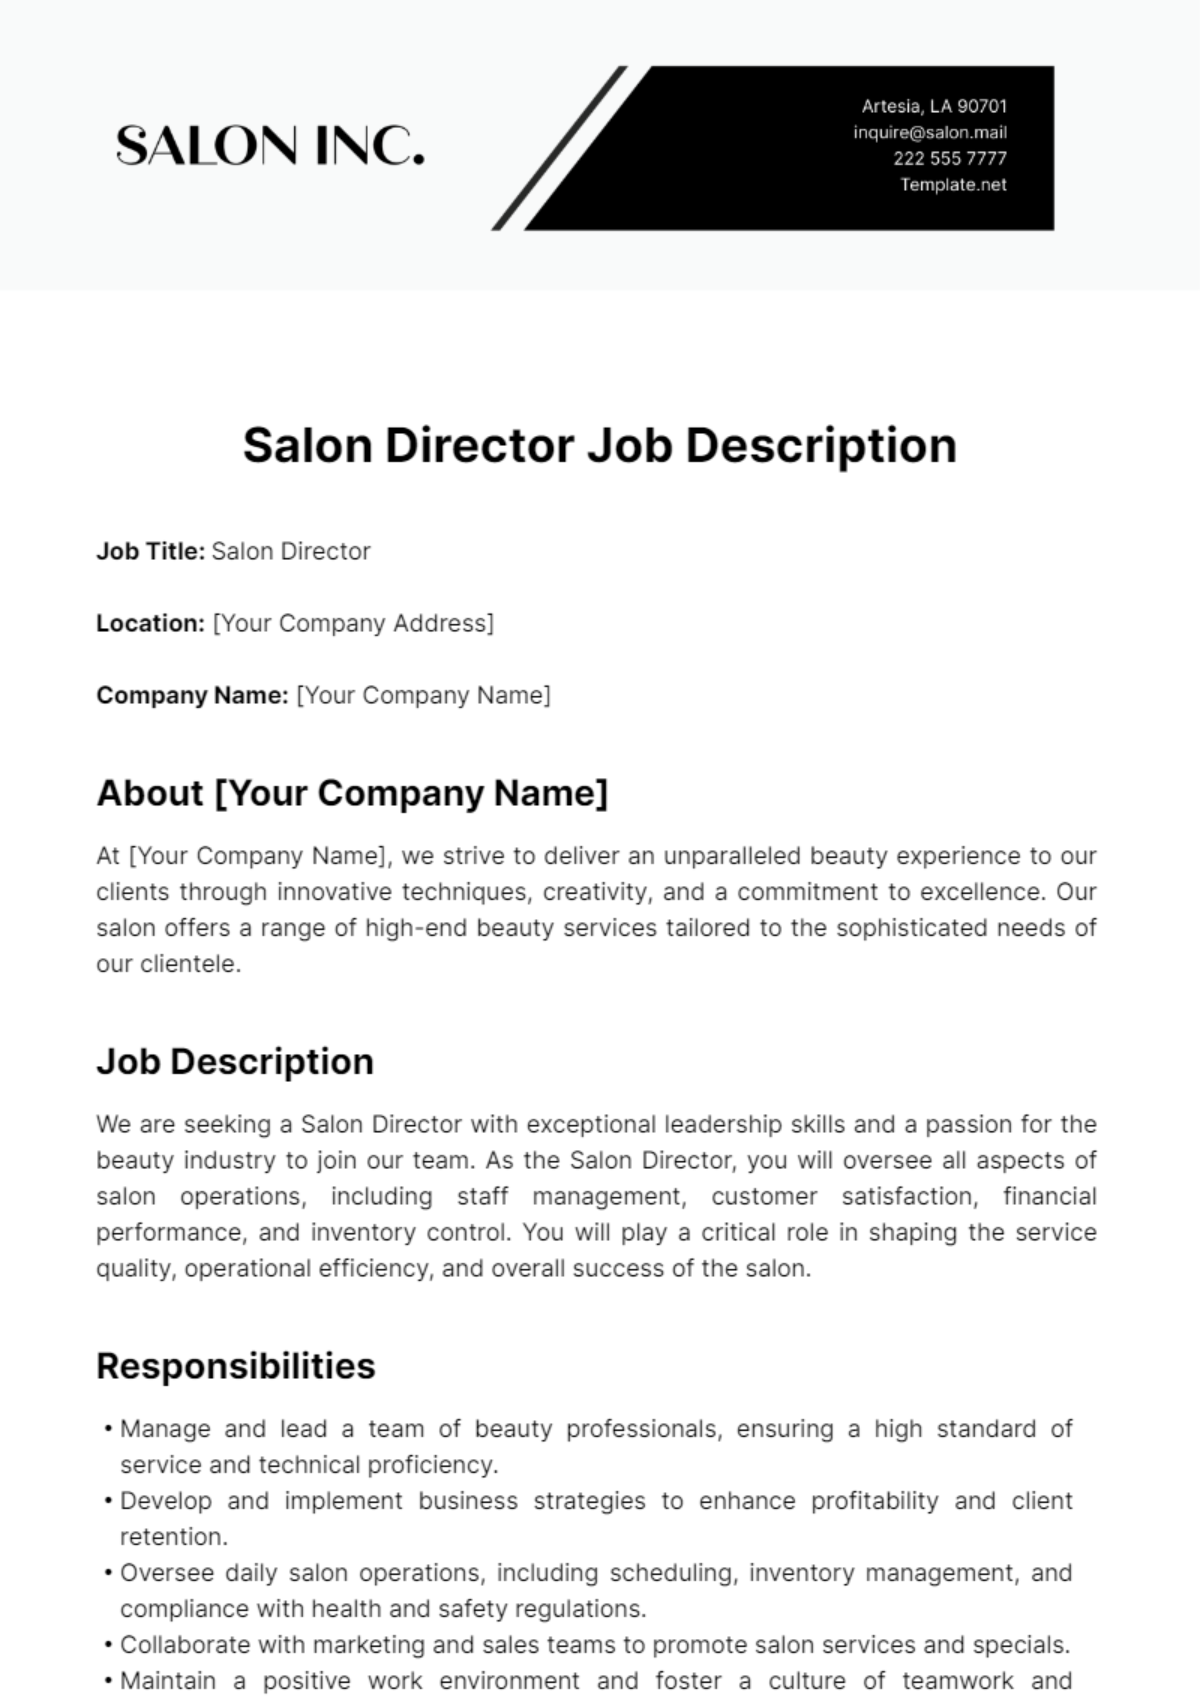 Salon Director Job Description Template